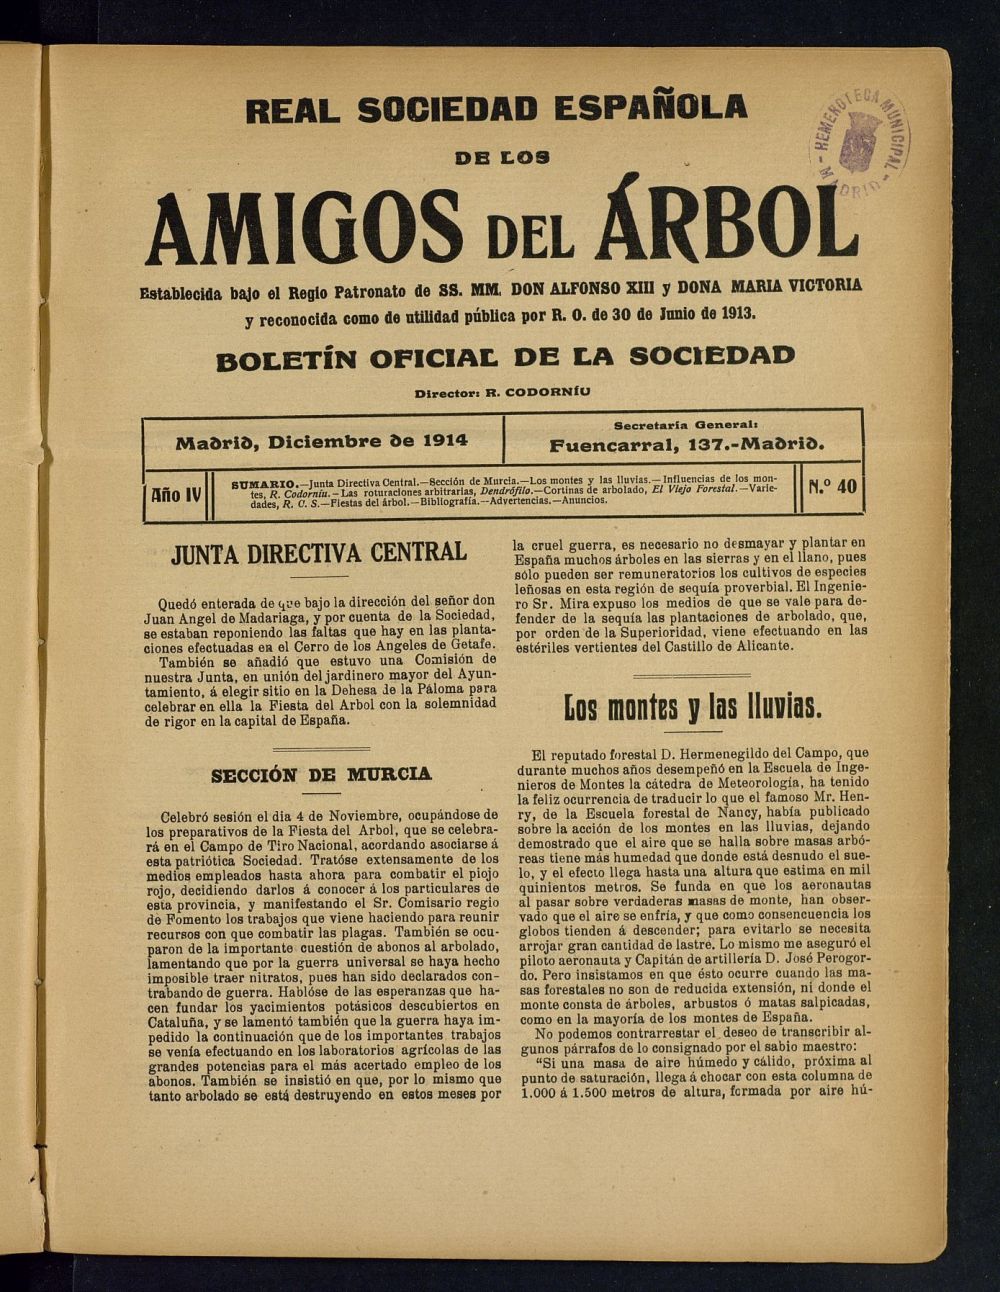 Boletn Comisin organizadora de la Sociedad Espaola de los amigos del rbol de diciembre de 1914